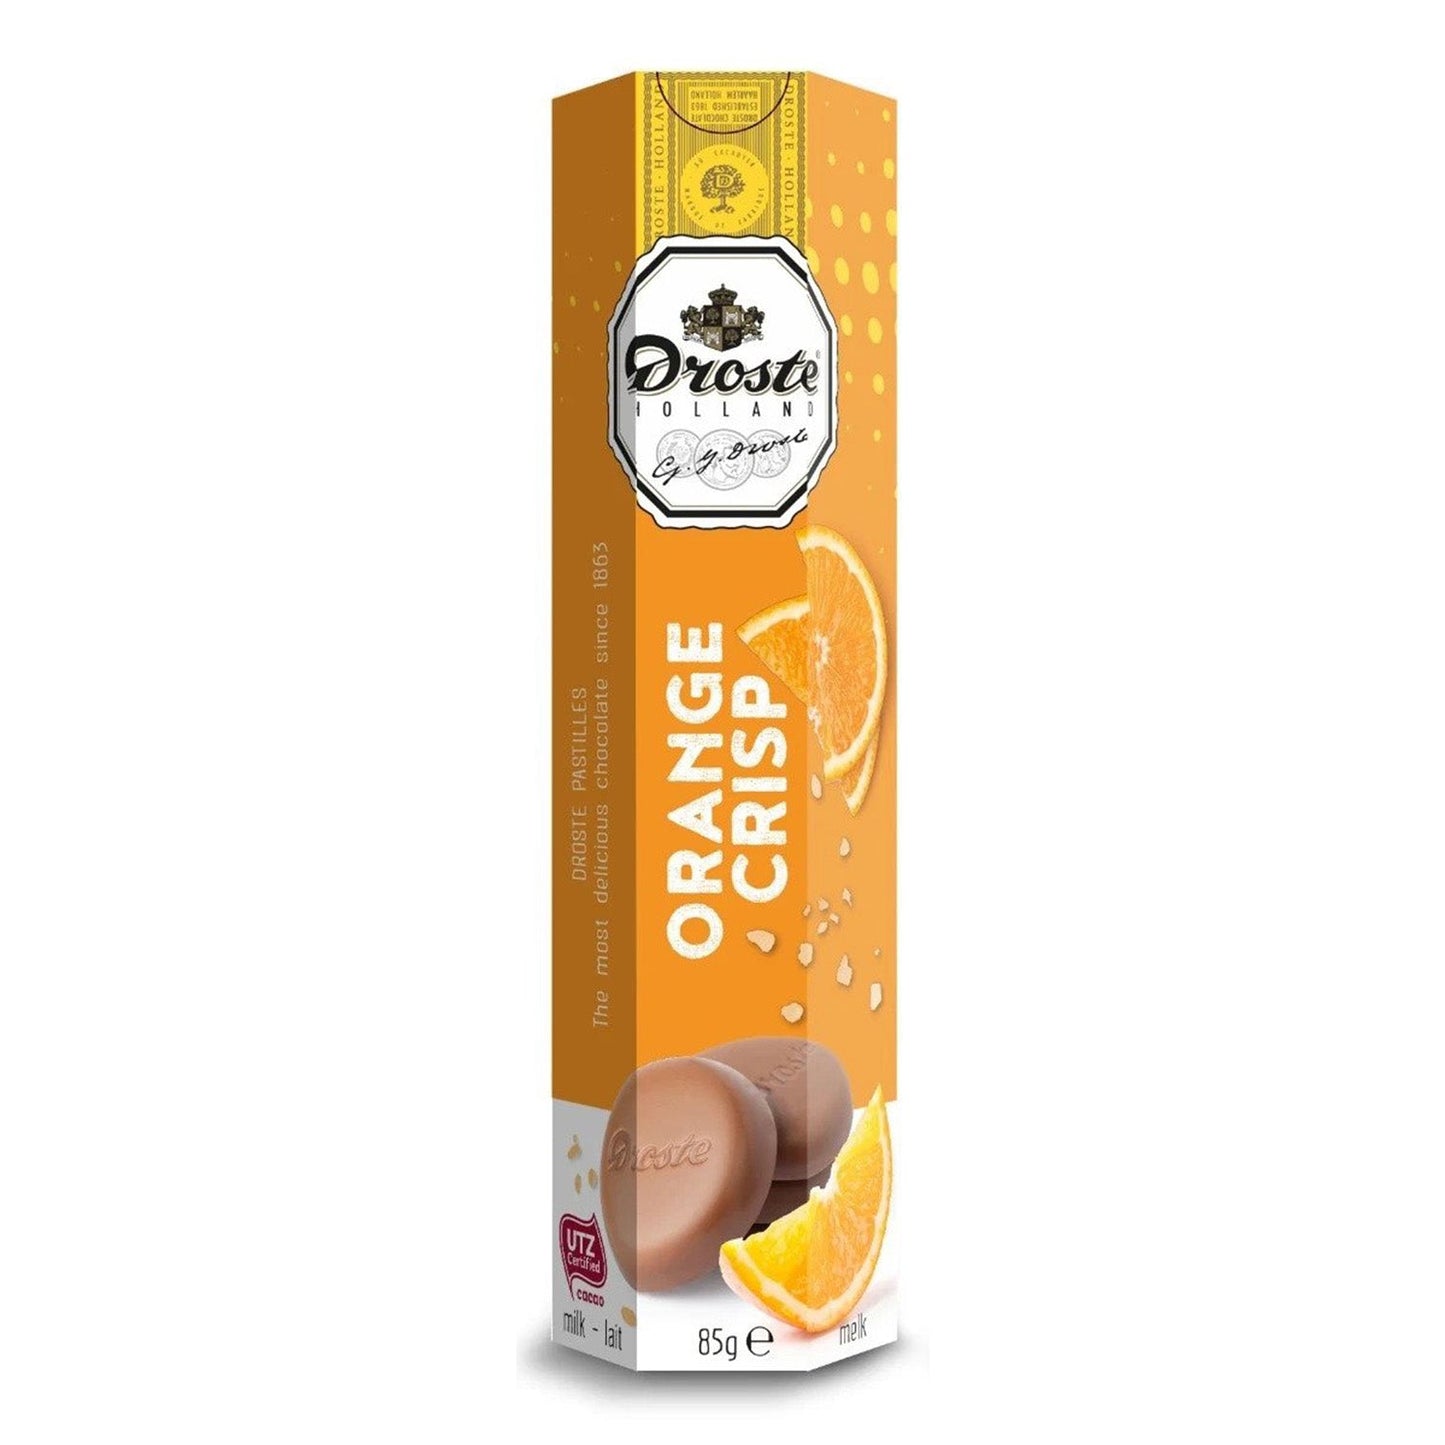 Droste Pastilles Melk Orange Crisp Koker (85 Gram) - van Droste - Nu voor maar €1.49 bij Mijn Snoepgoed